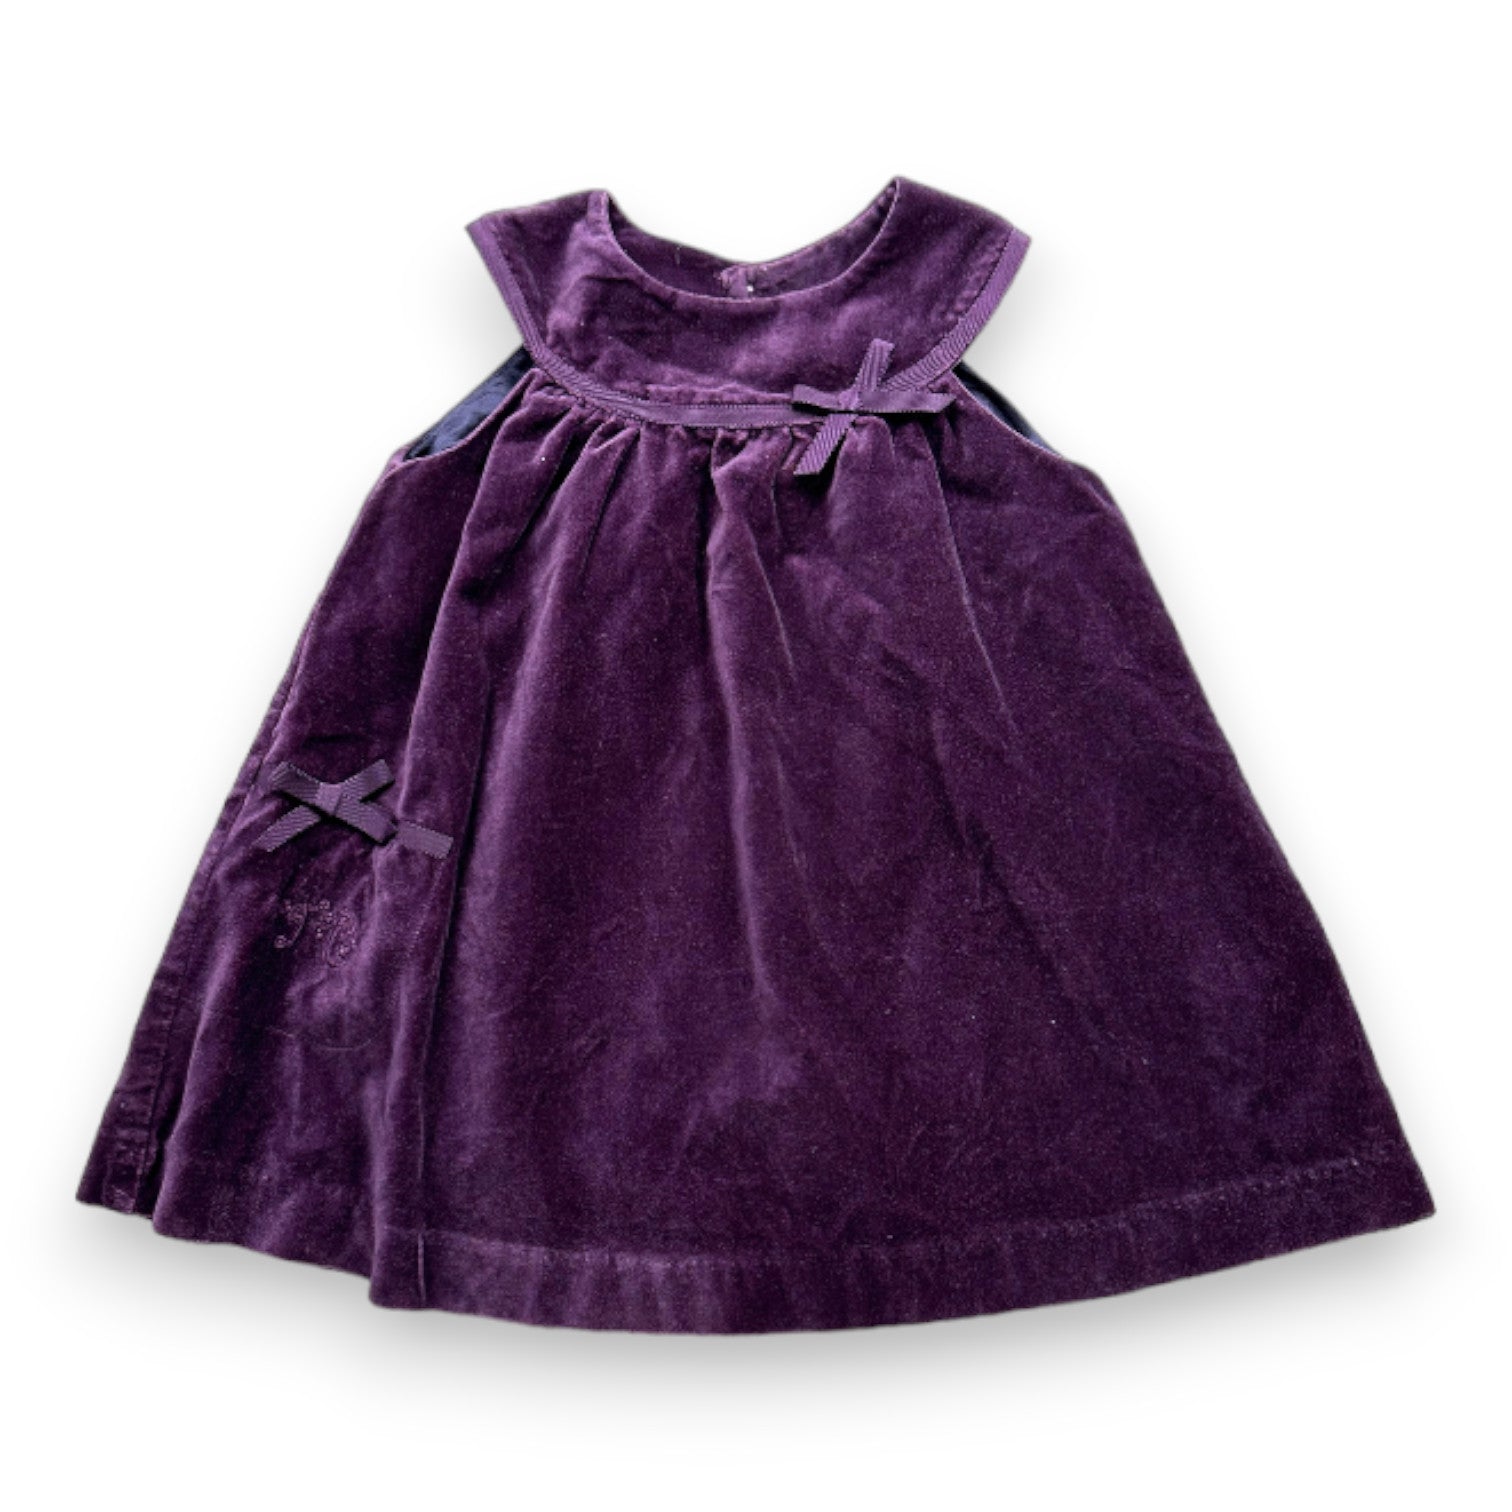 TARTINE & CHOCOLAT - Robe violette en velours - 18 moi